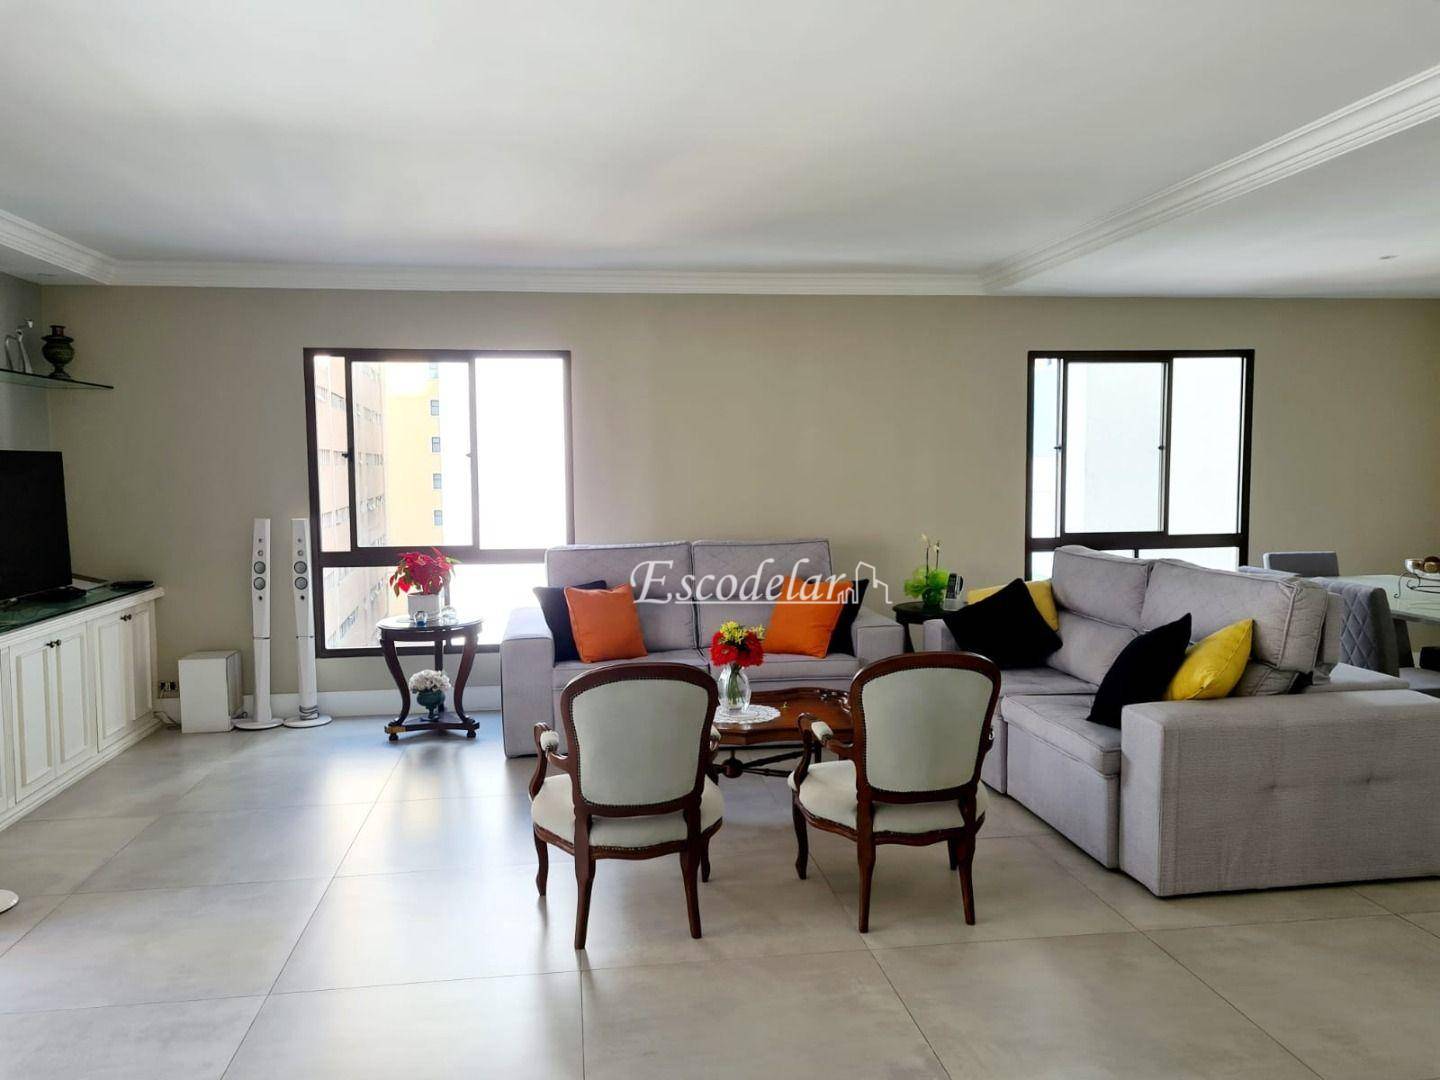 Apartamento à venda, 182 m² por R$ 3.000.000,00 - Jardim Paulista - São Paulo/SP